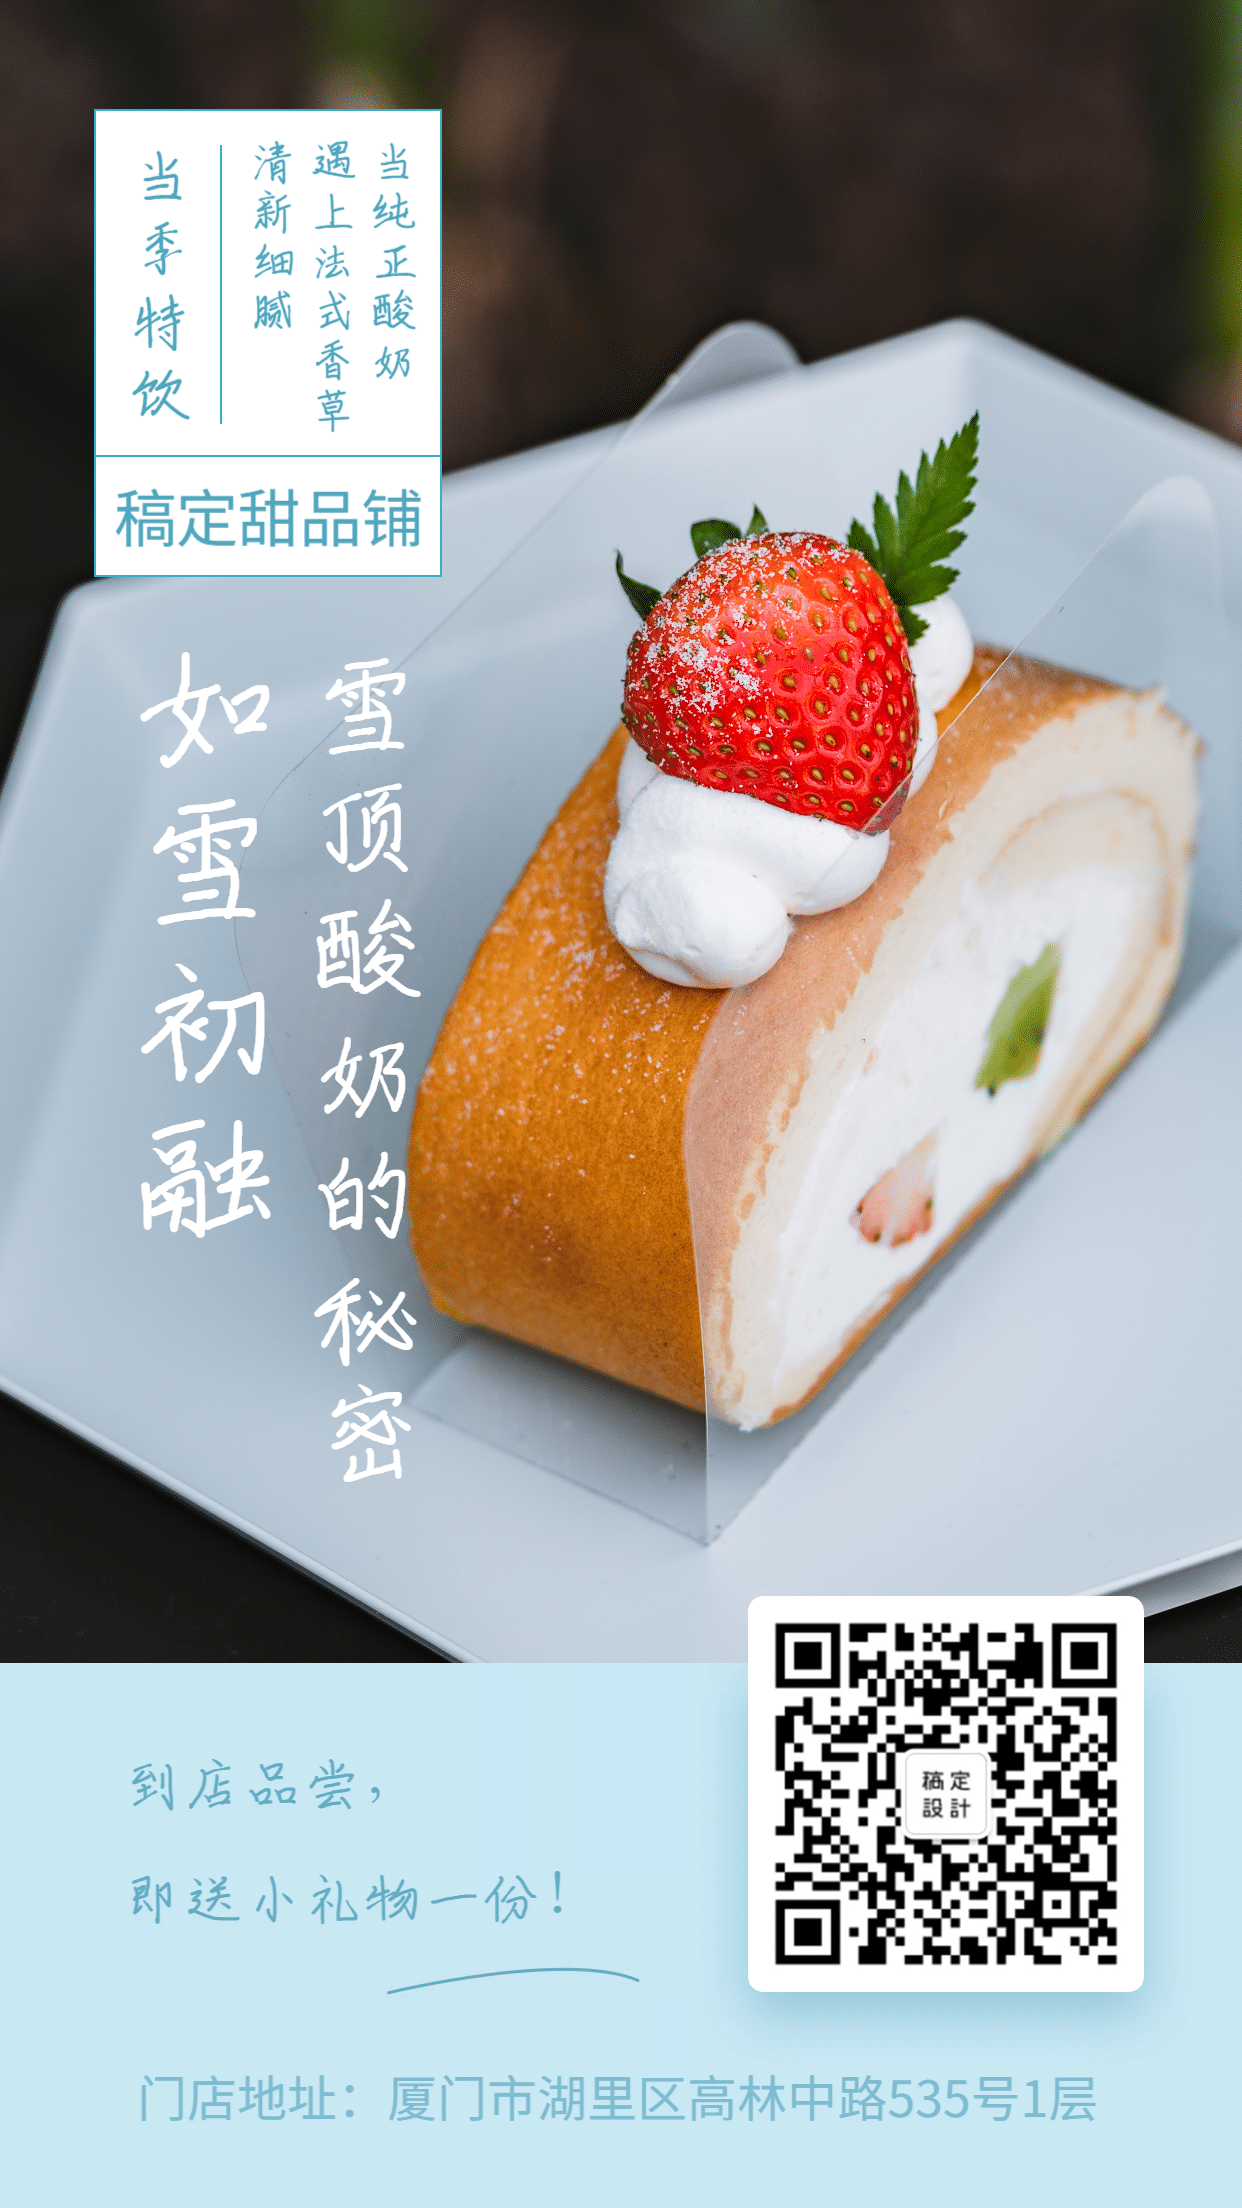 下午茶/简约清新夏天甜品手机海报预览效果